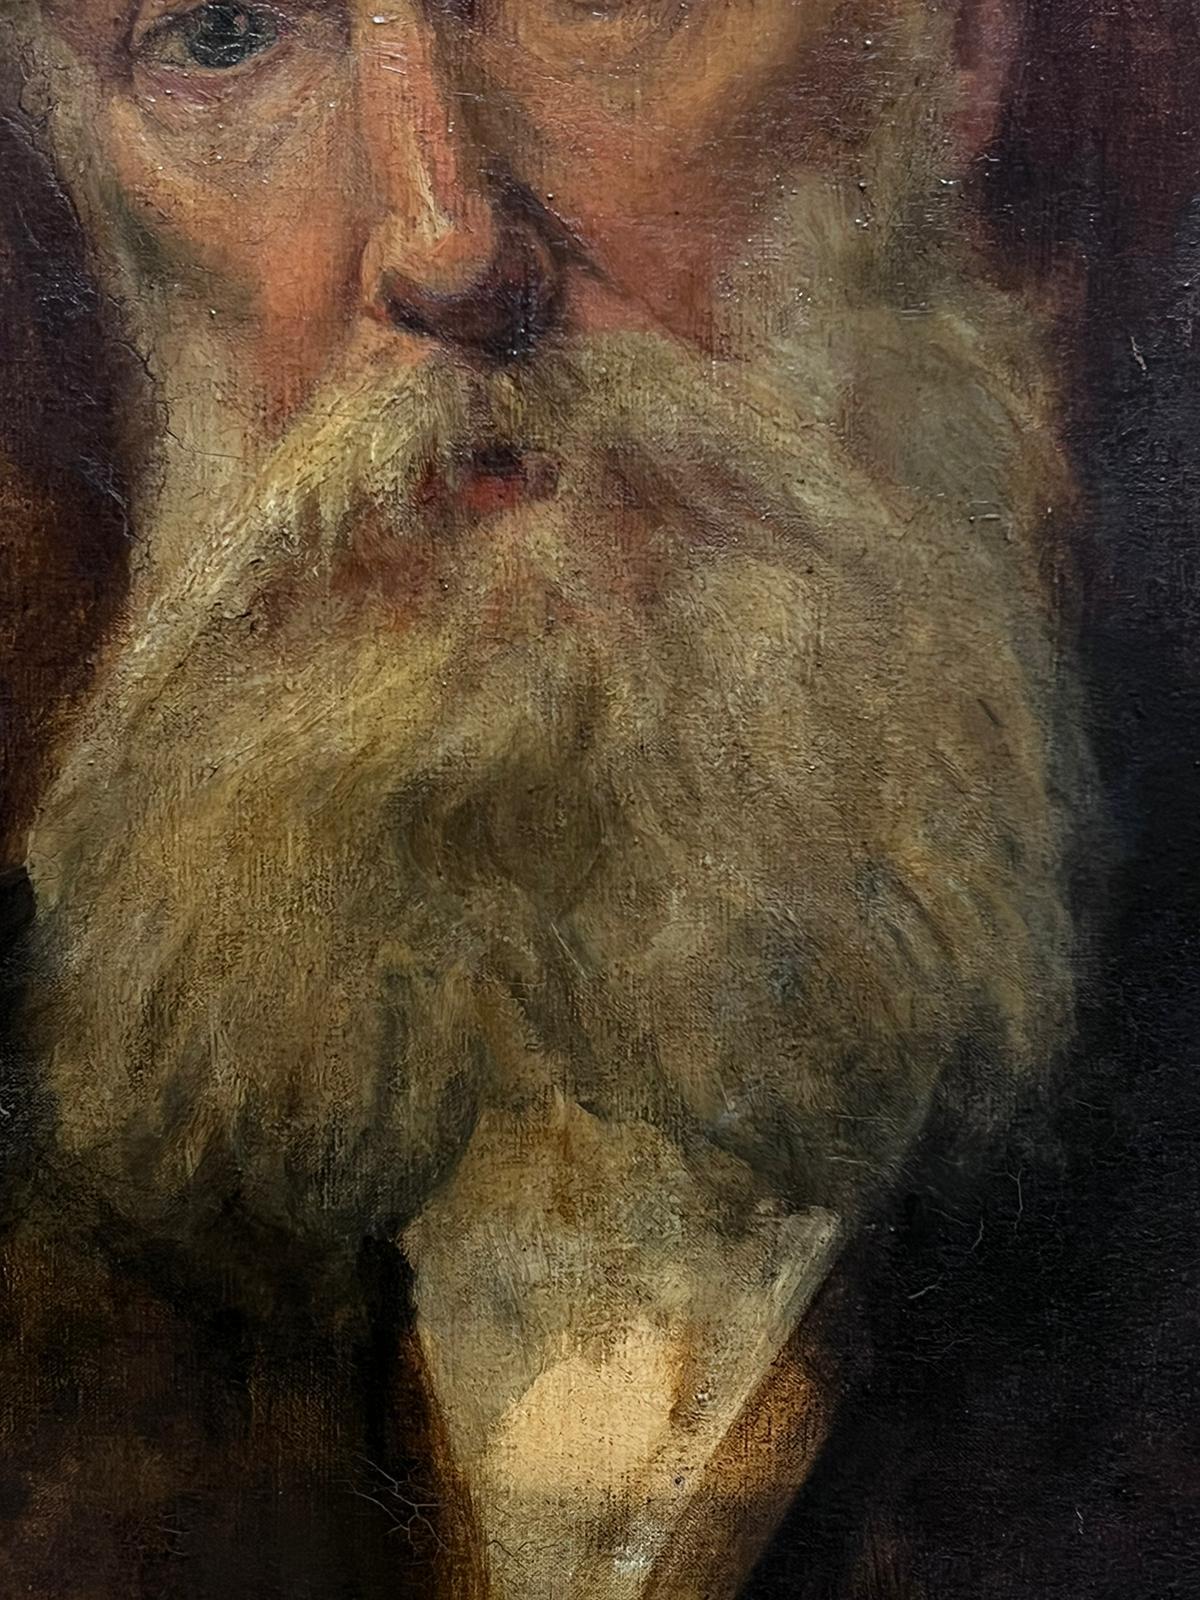 Feines impressionistisches Ölgemälde, Porträt eines bearden Mannes, erstaunlicher Rahmen, d. 1901 (Impressionismus), Painting, von British c. 1901